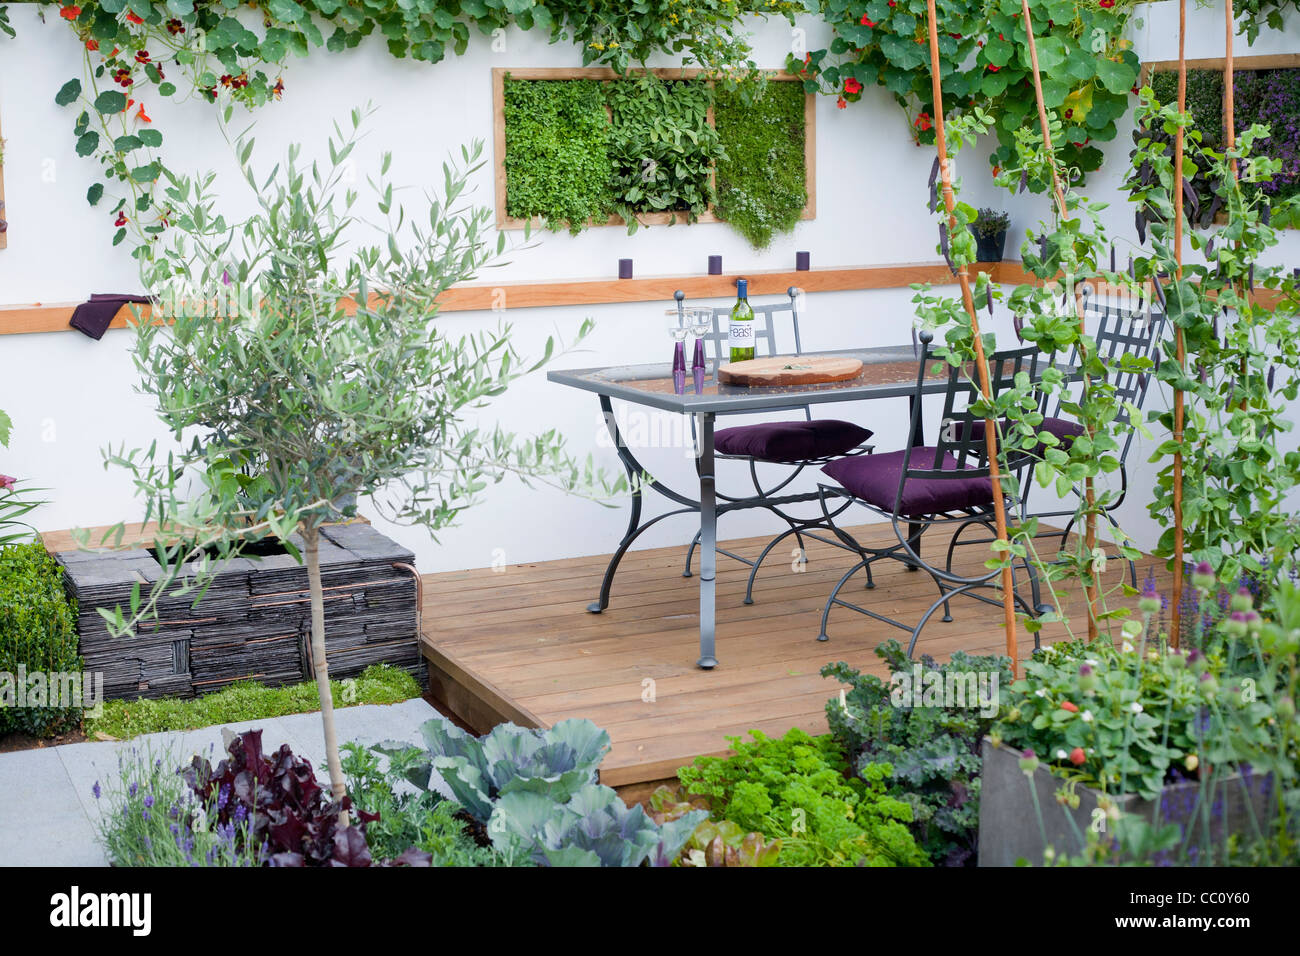 Cuisine urbaine avec des meubles de jardin sur terrasse. Banque D'Images